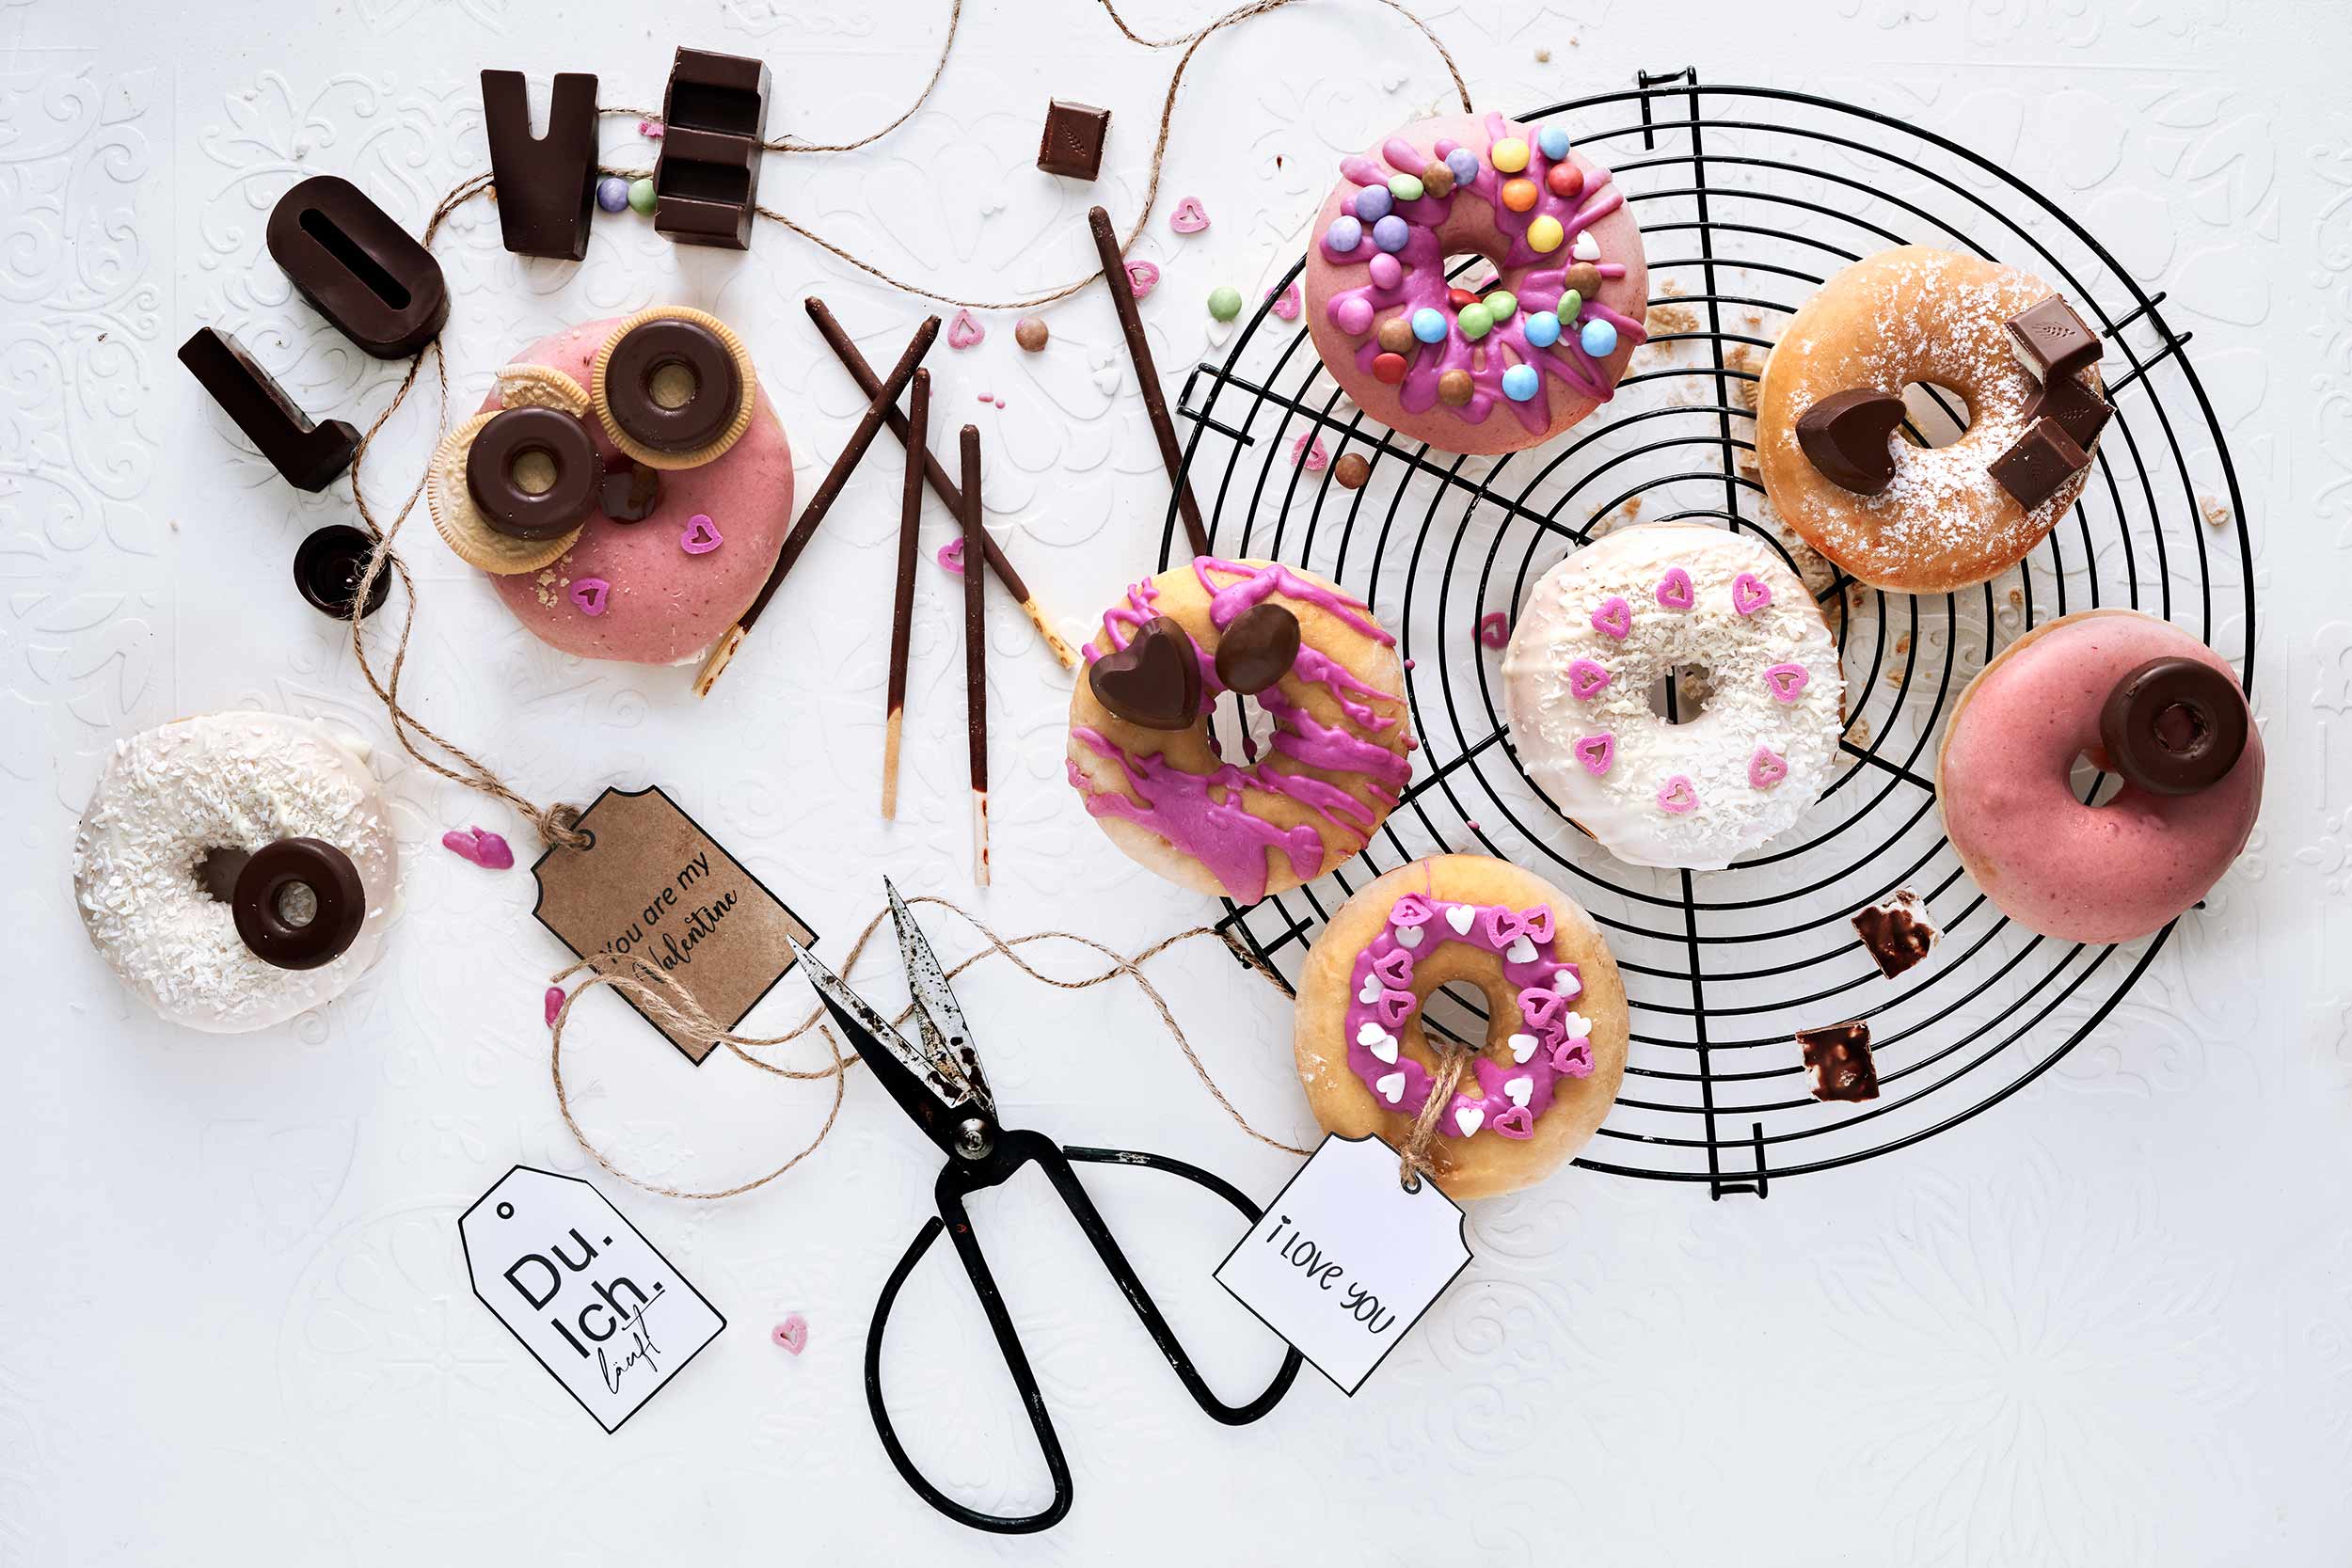 Donuts zum Valentinstag eignen sich perfekt, um sie für "deine" Lieblingsmenschen individuell zu gestalten.